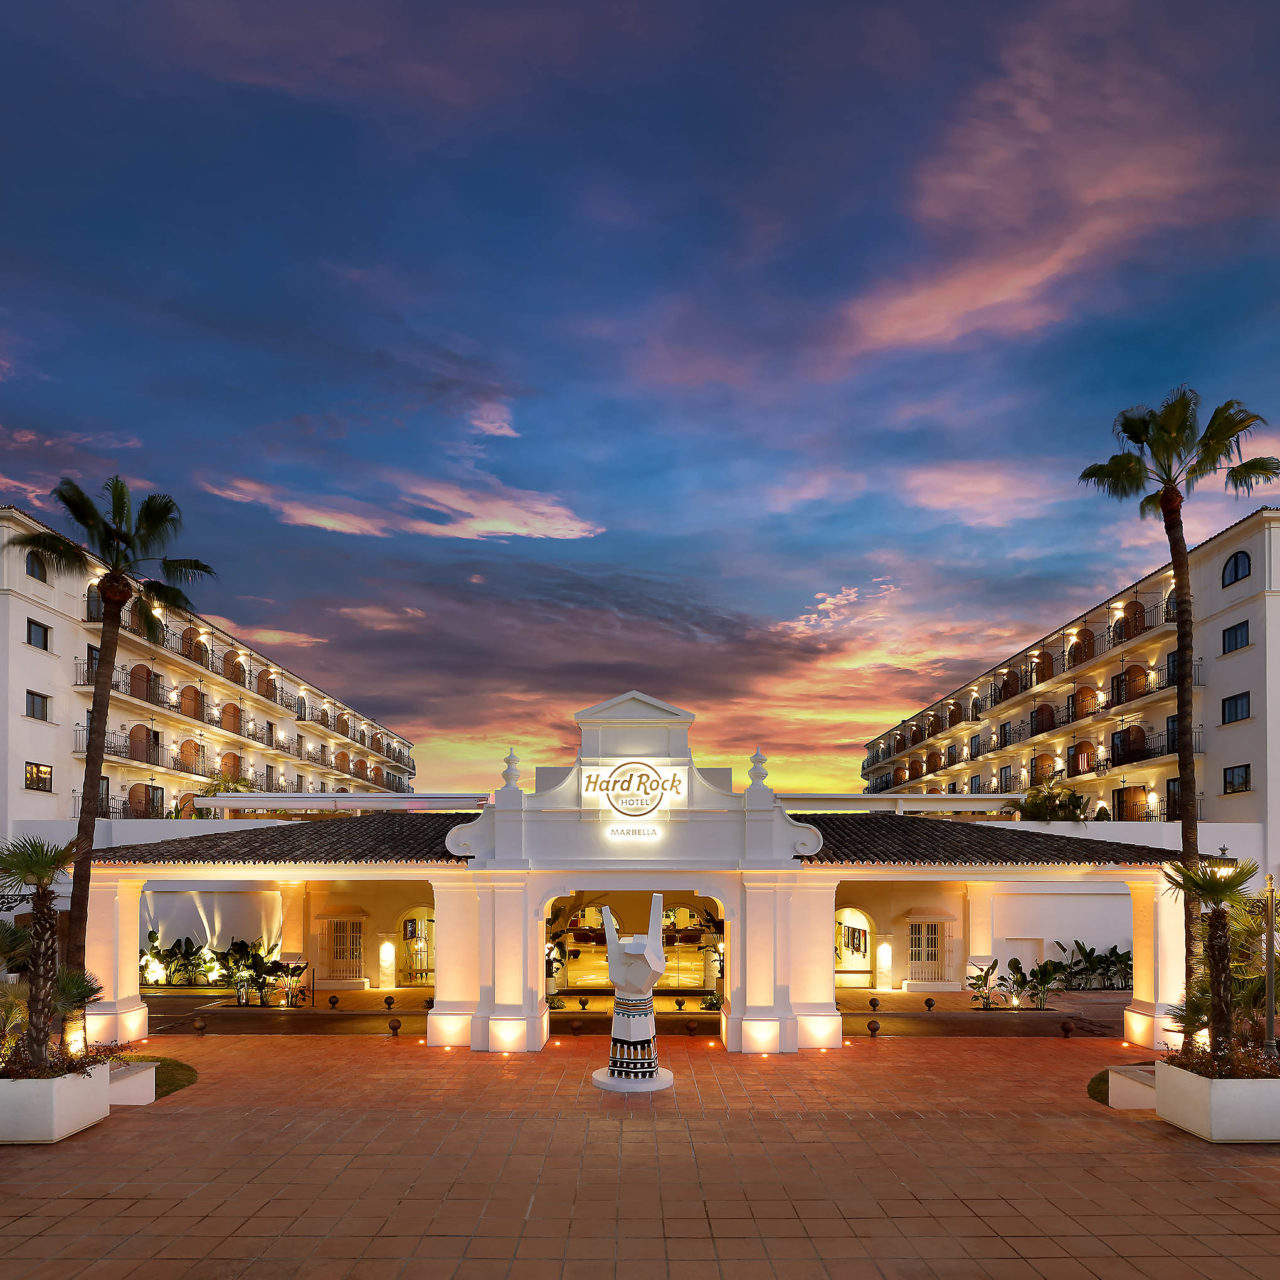 Blu Banus - Puerto Banus hotels